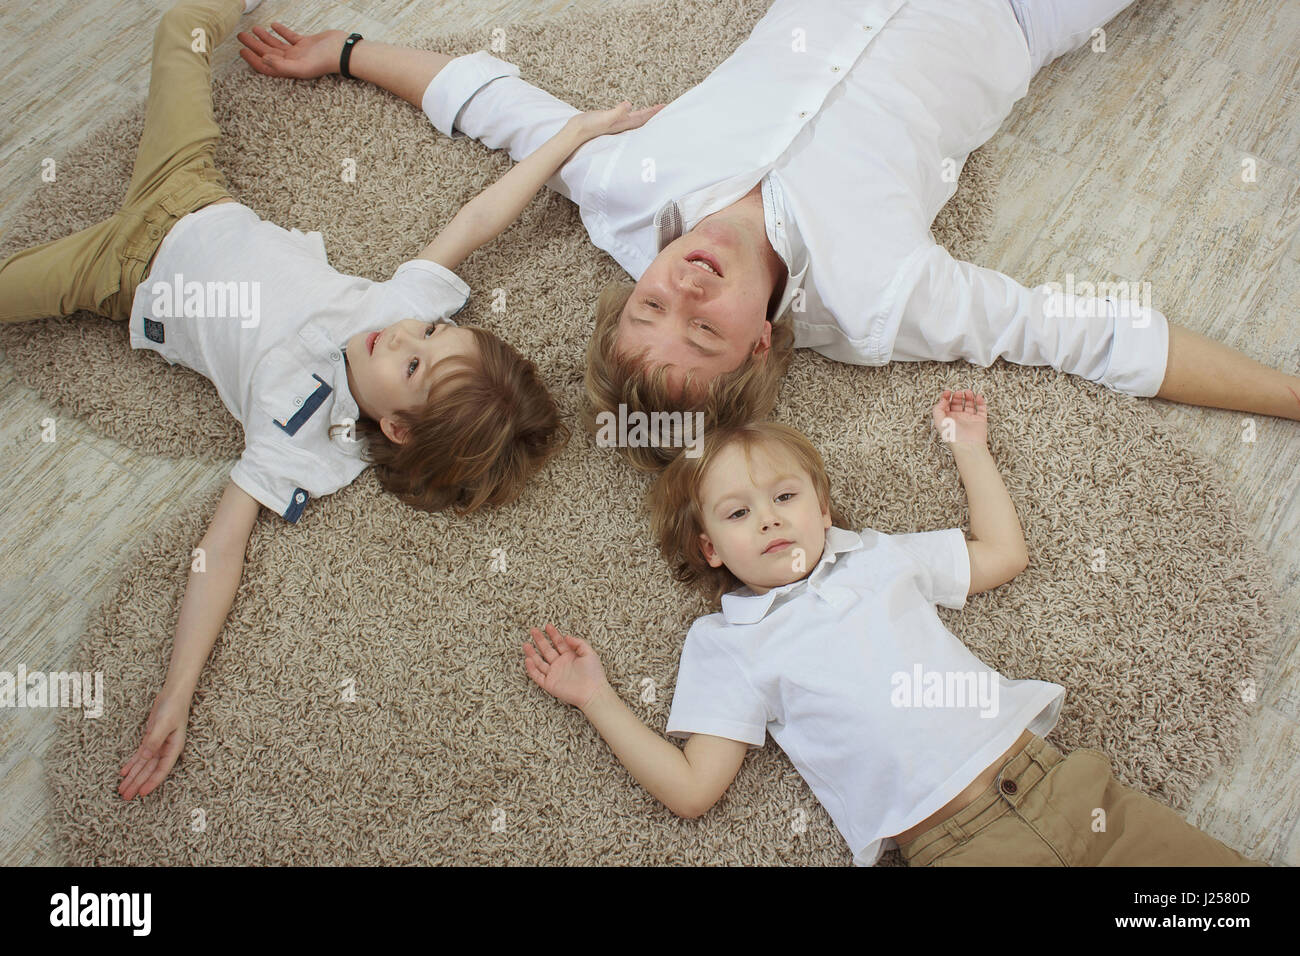 Vue de dessus du jeune père avec mignon fils lying on floor Banque D'Images